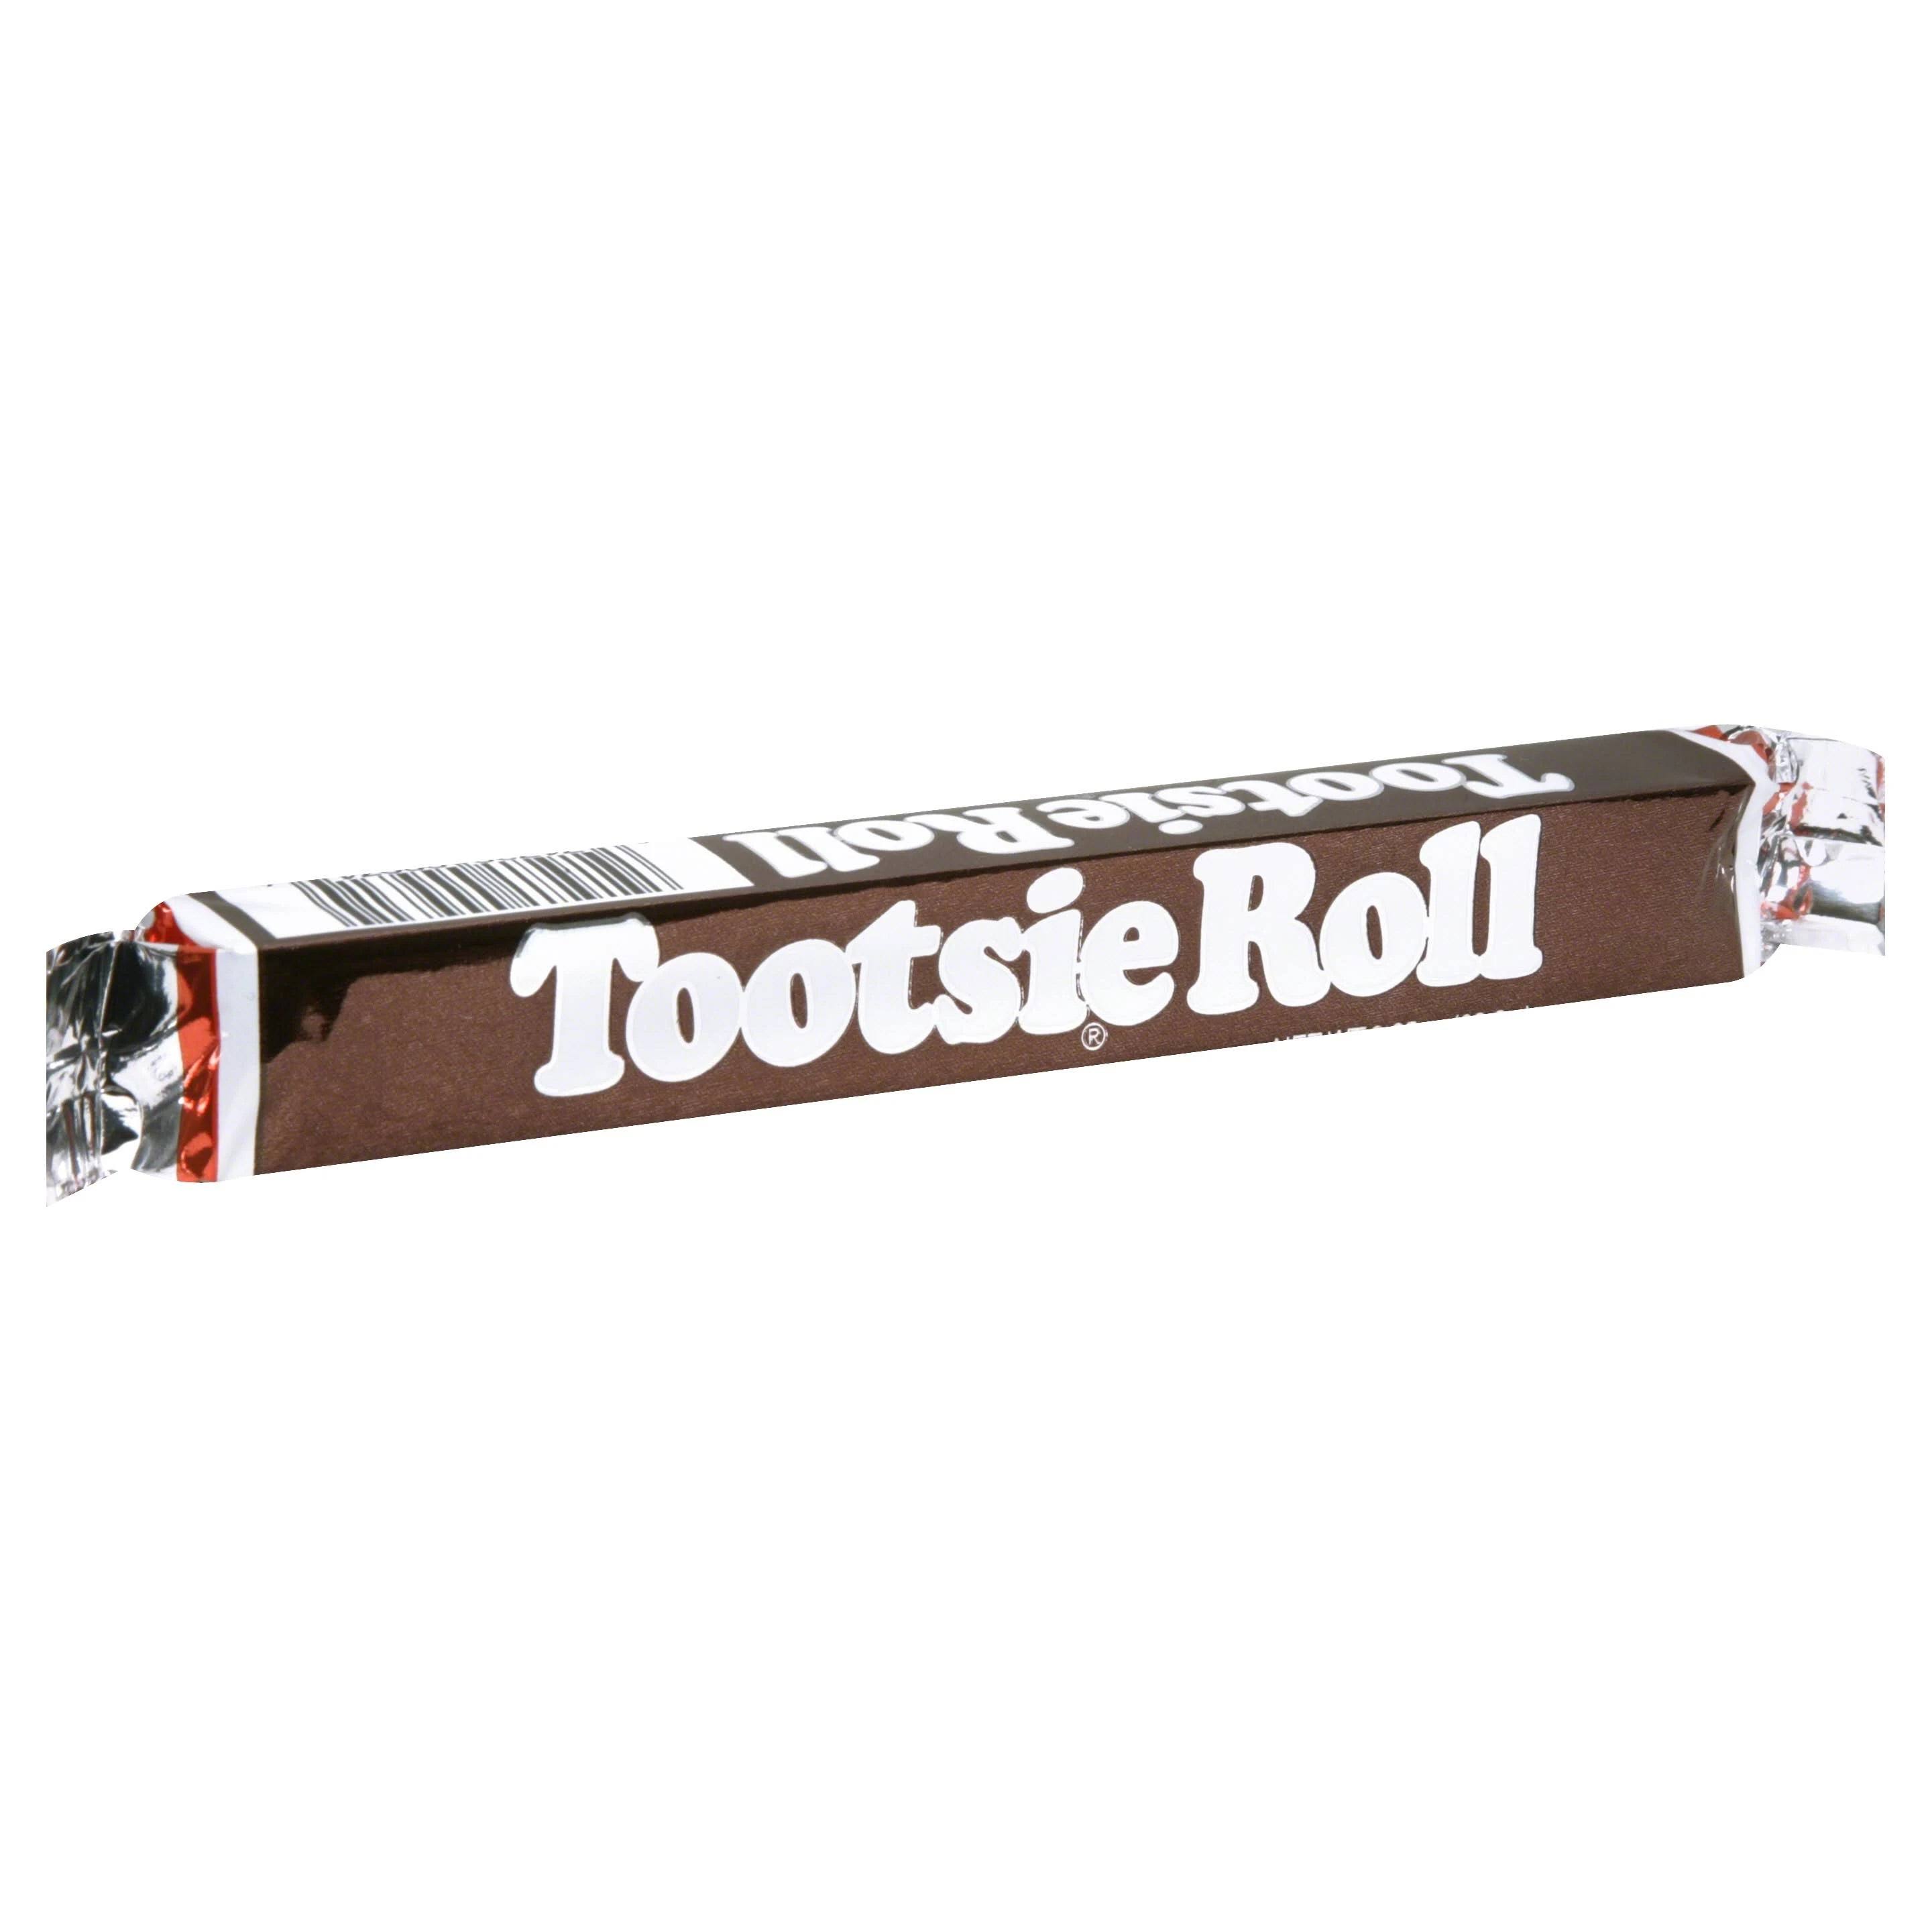 Tootsie Roll Bar 63.8g